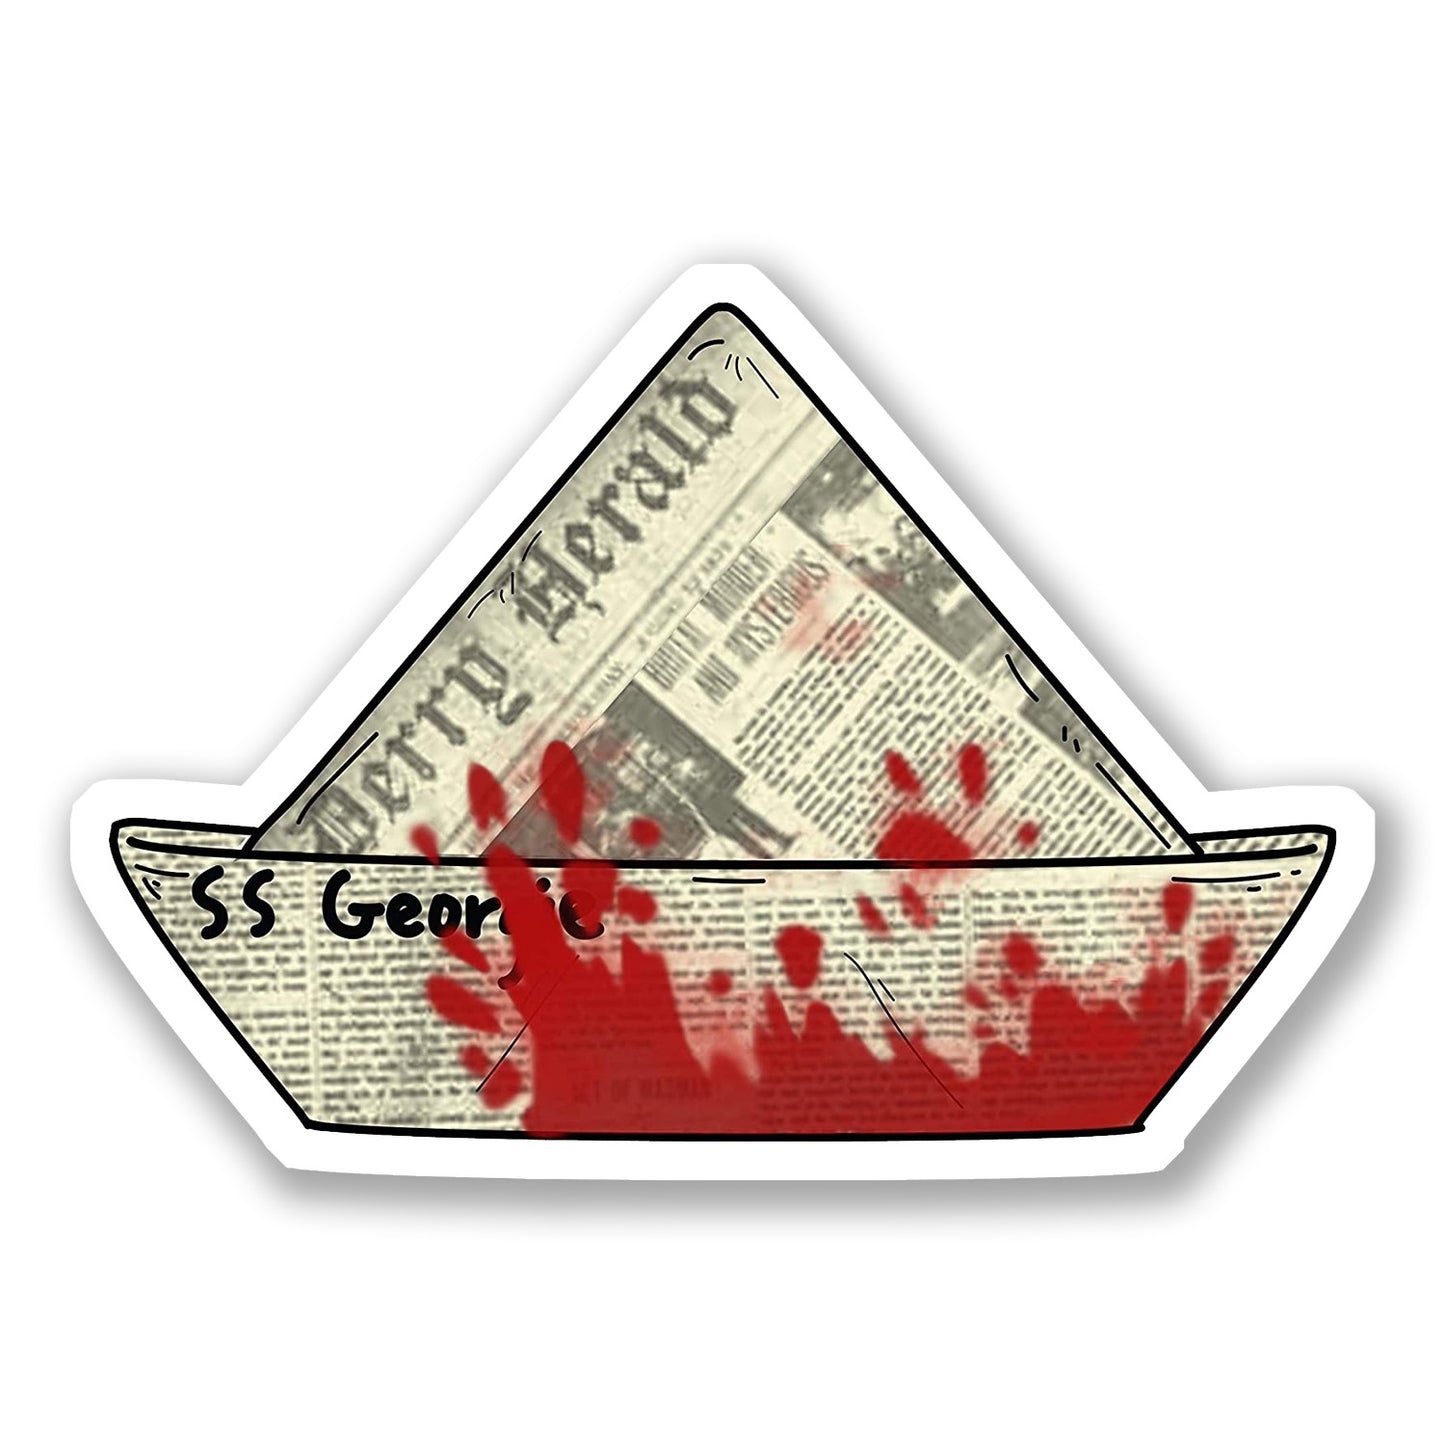 SS Georgie Bloody Newspaper Boat Vinyl Die Cut Sticker